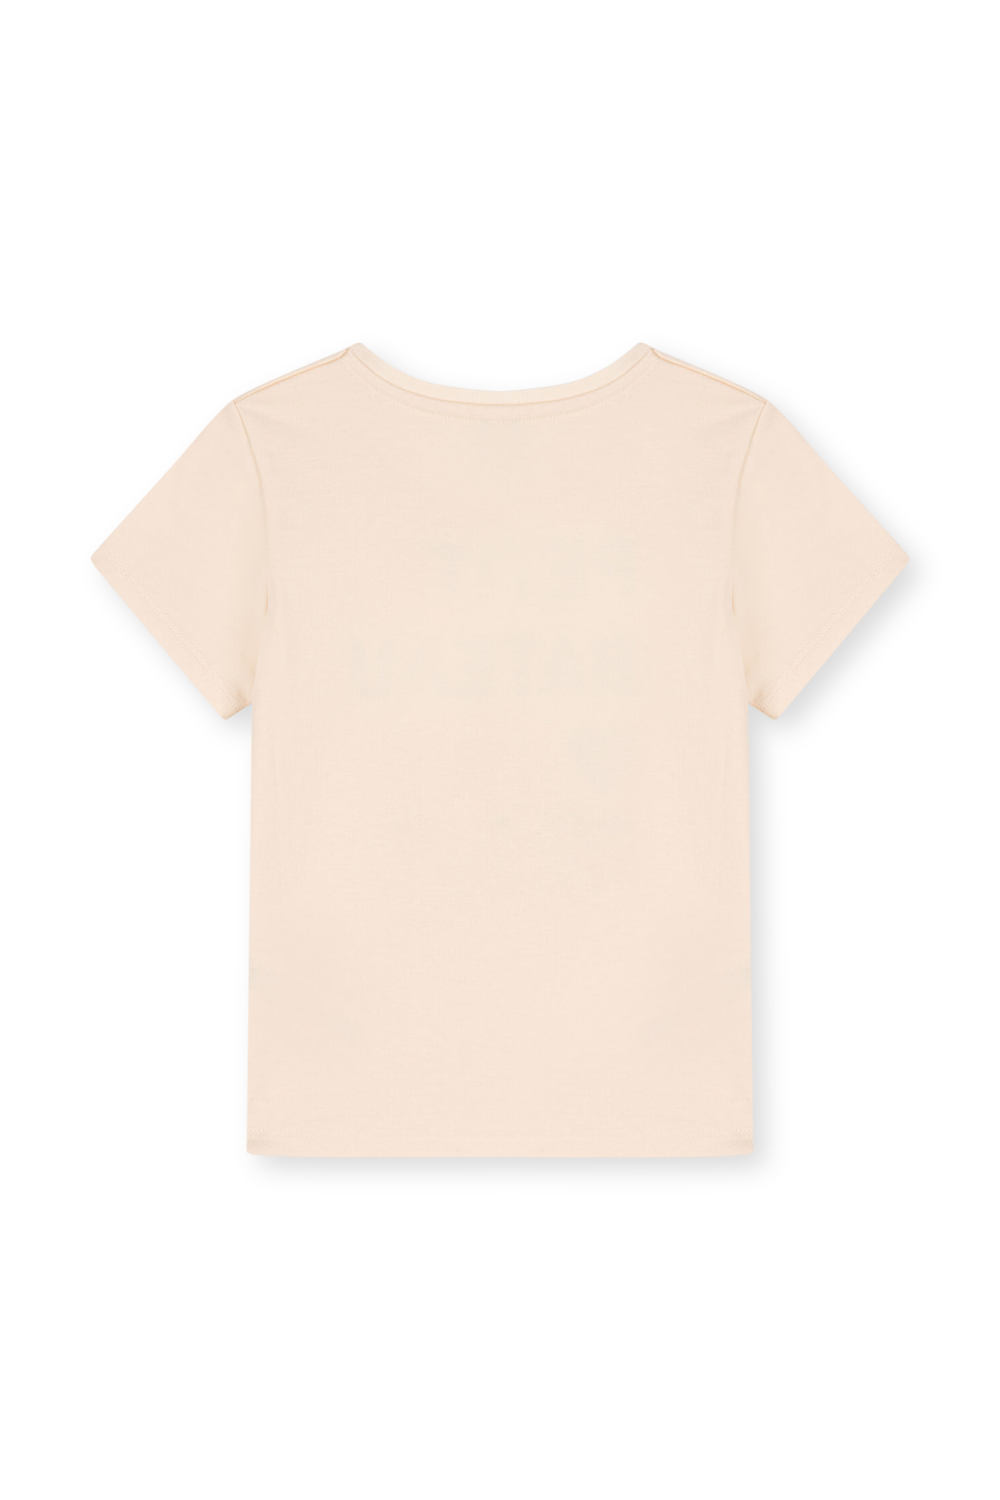 חולצת טי עם הדפס - גילאי 3-5 PETIT BATEAU